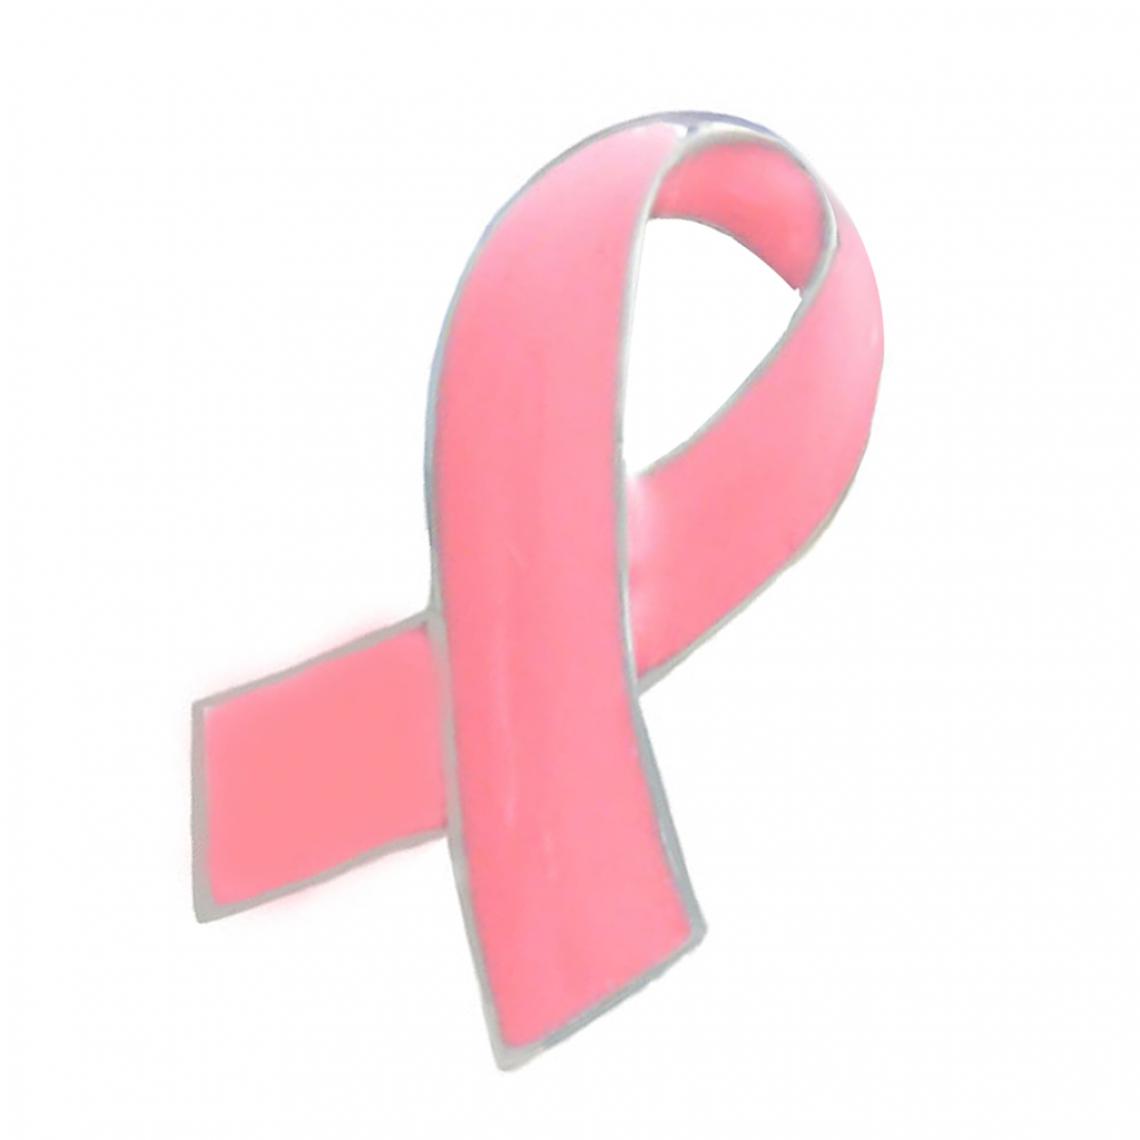 marque generique - Officiel Broche Ruban Rose Broche Badge de Sensibilisation Du Cancer Du Sein pour Femmes Filles - Broches de maçon